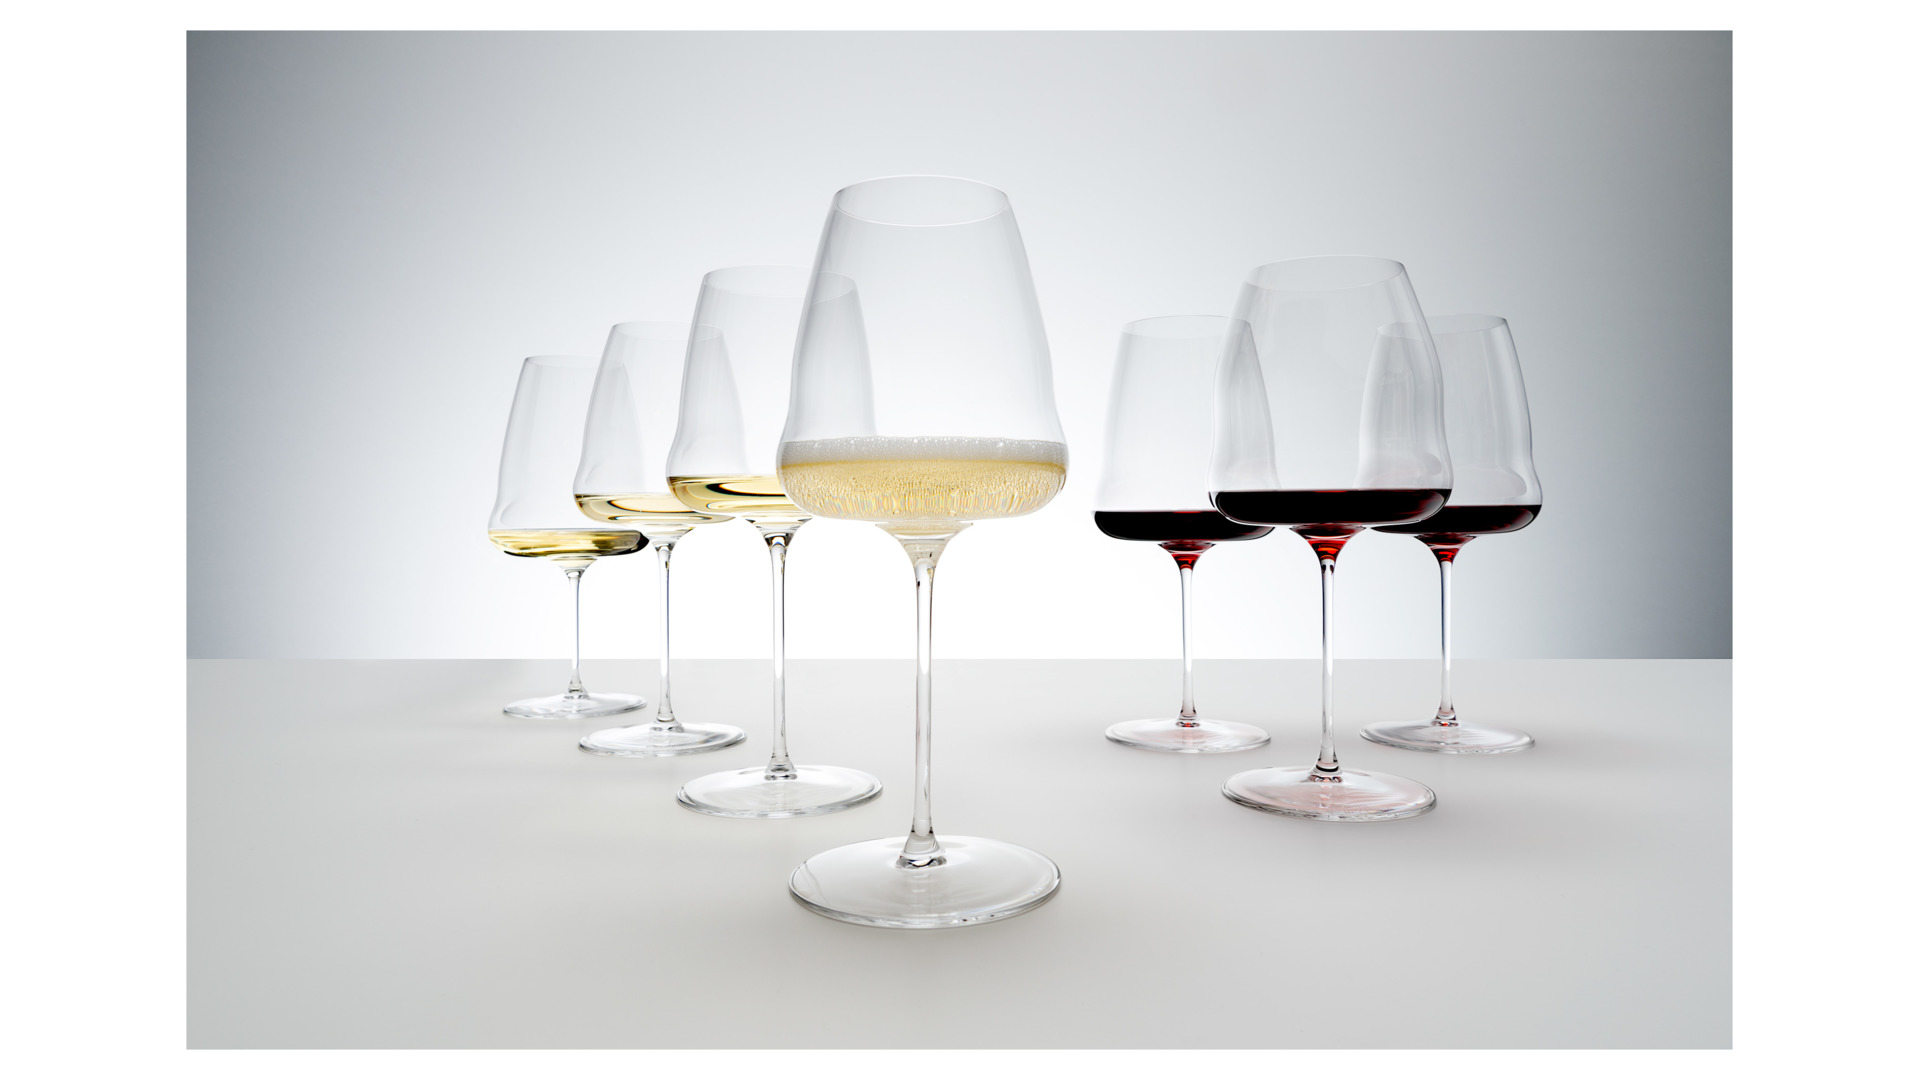 Бокал для белого вина Riedel Wine Wings Шардоне 736 мл, h25 см, стекло хрустальное